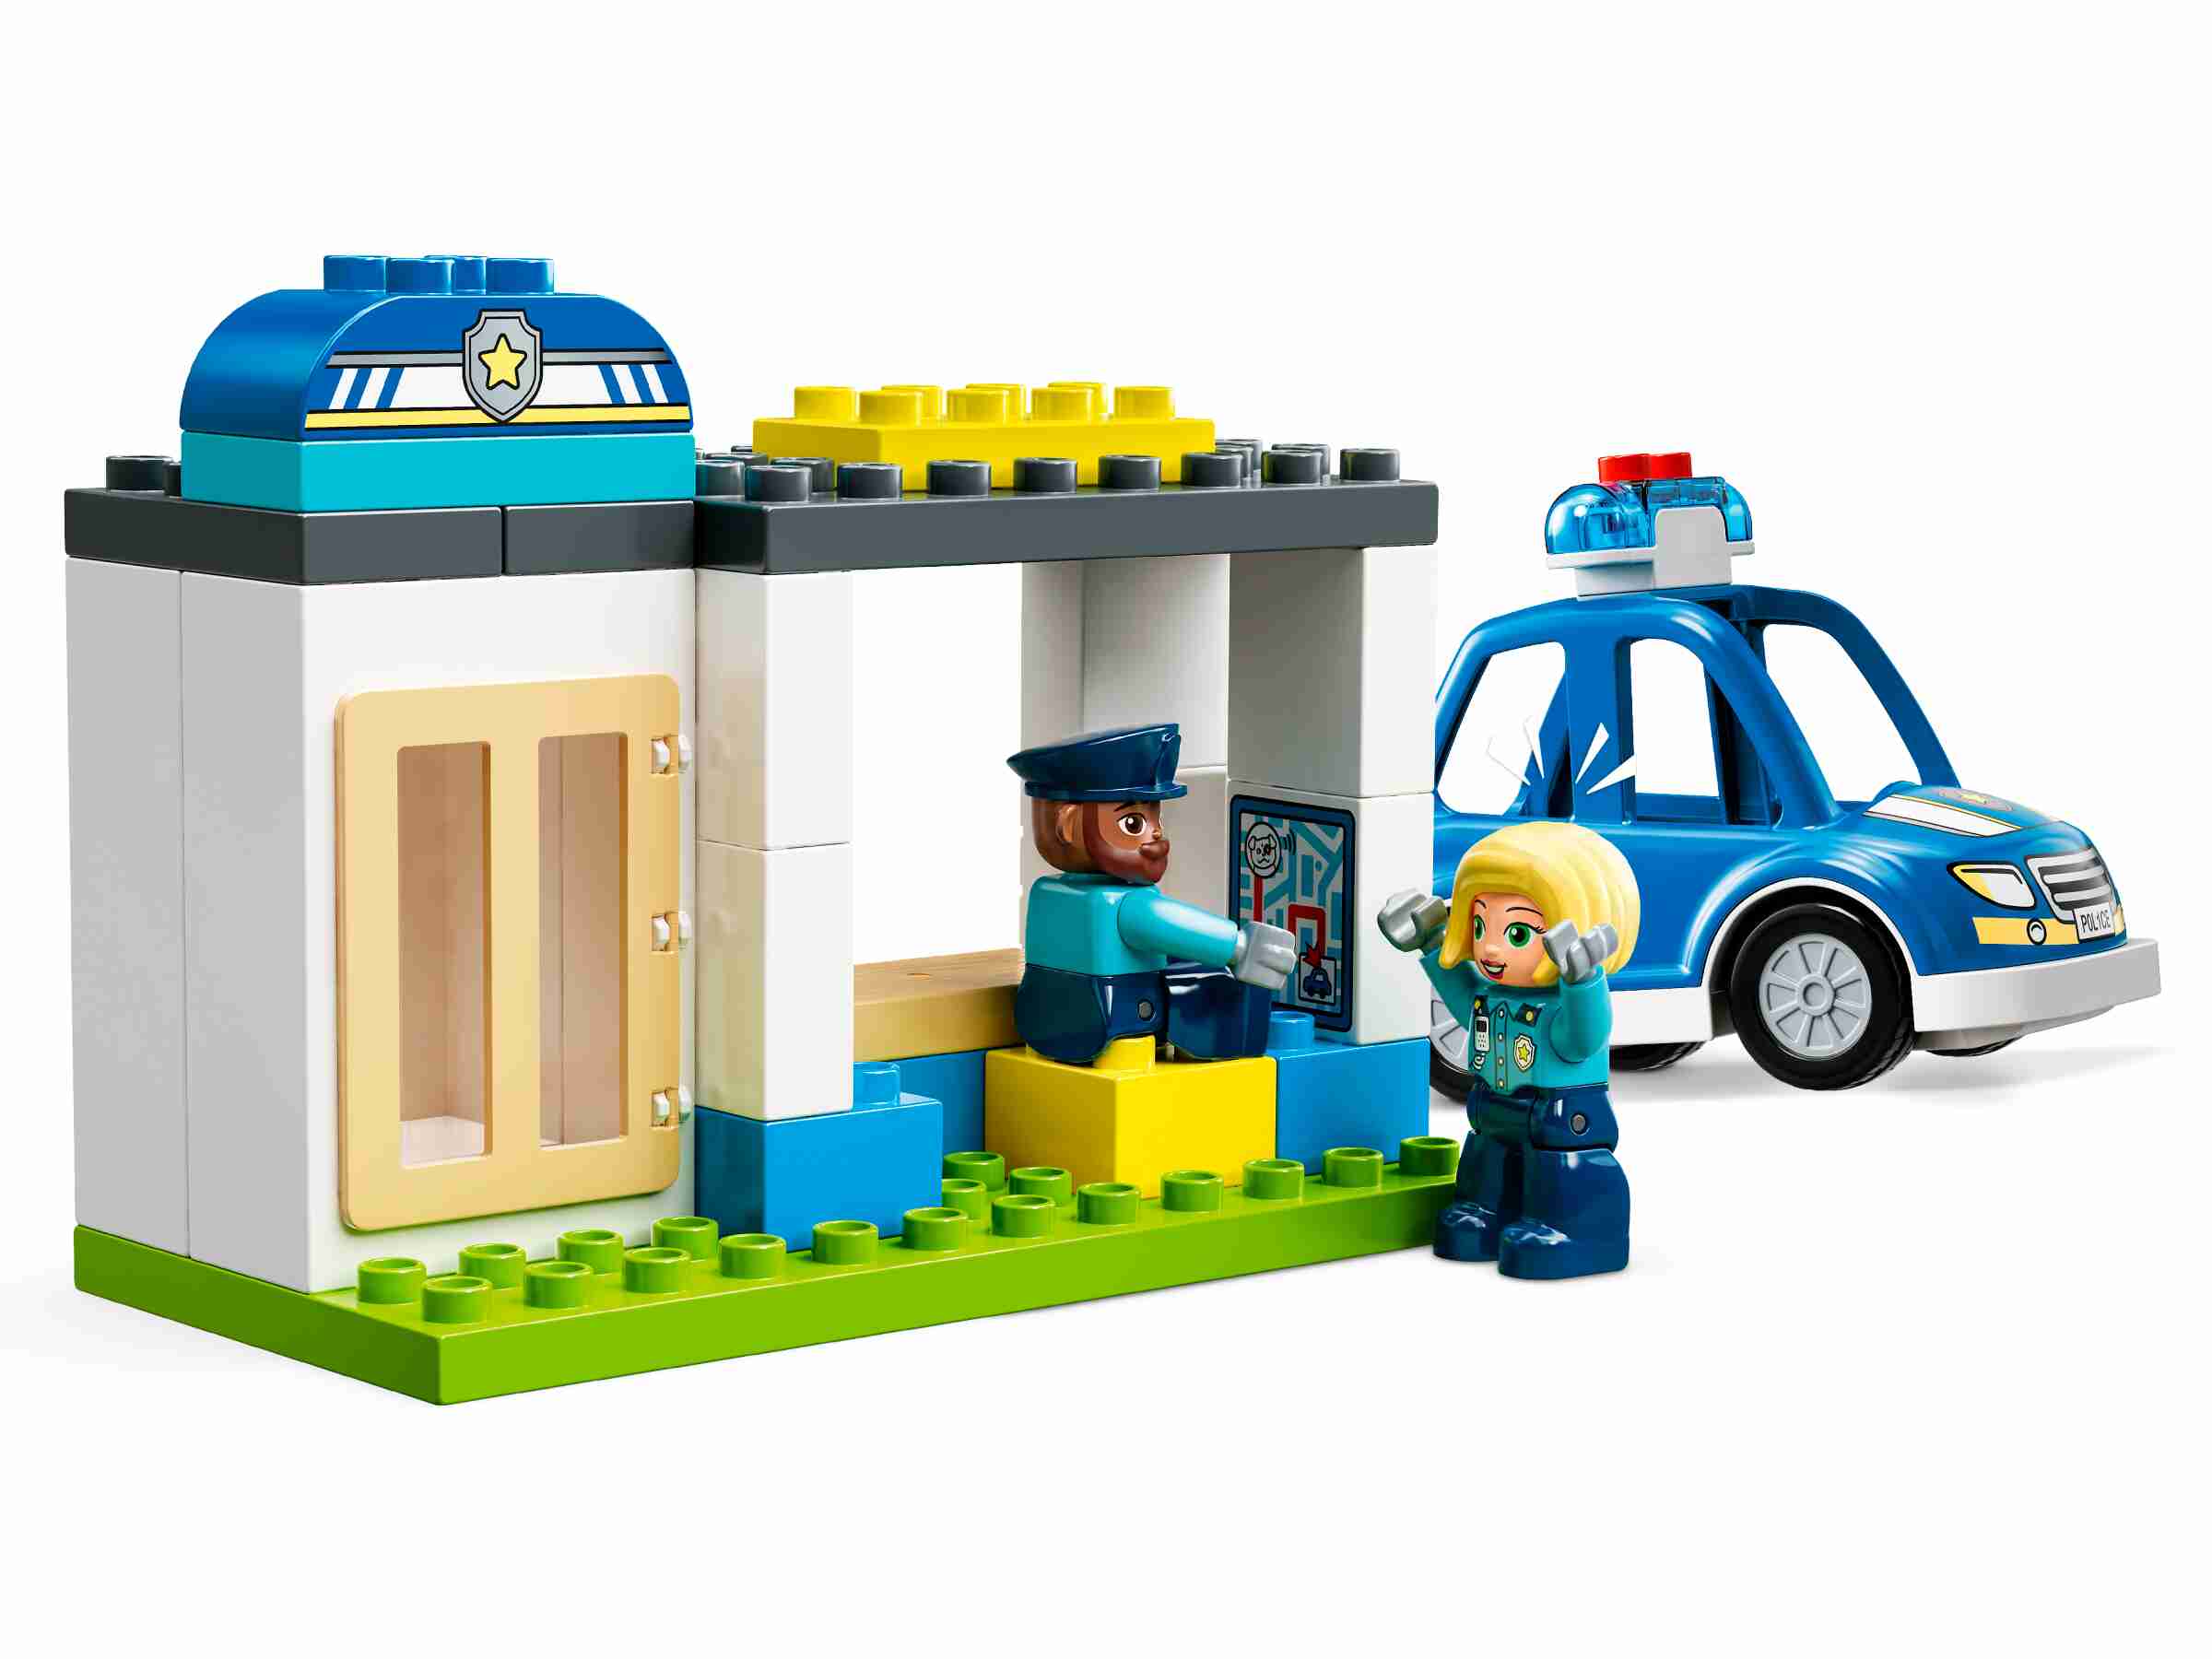 LEGO 10959 DUPLO Polizeistation mit Hubschrauber